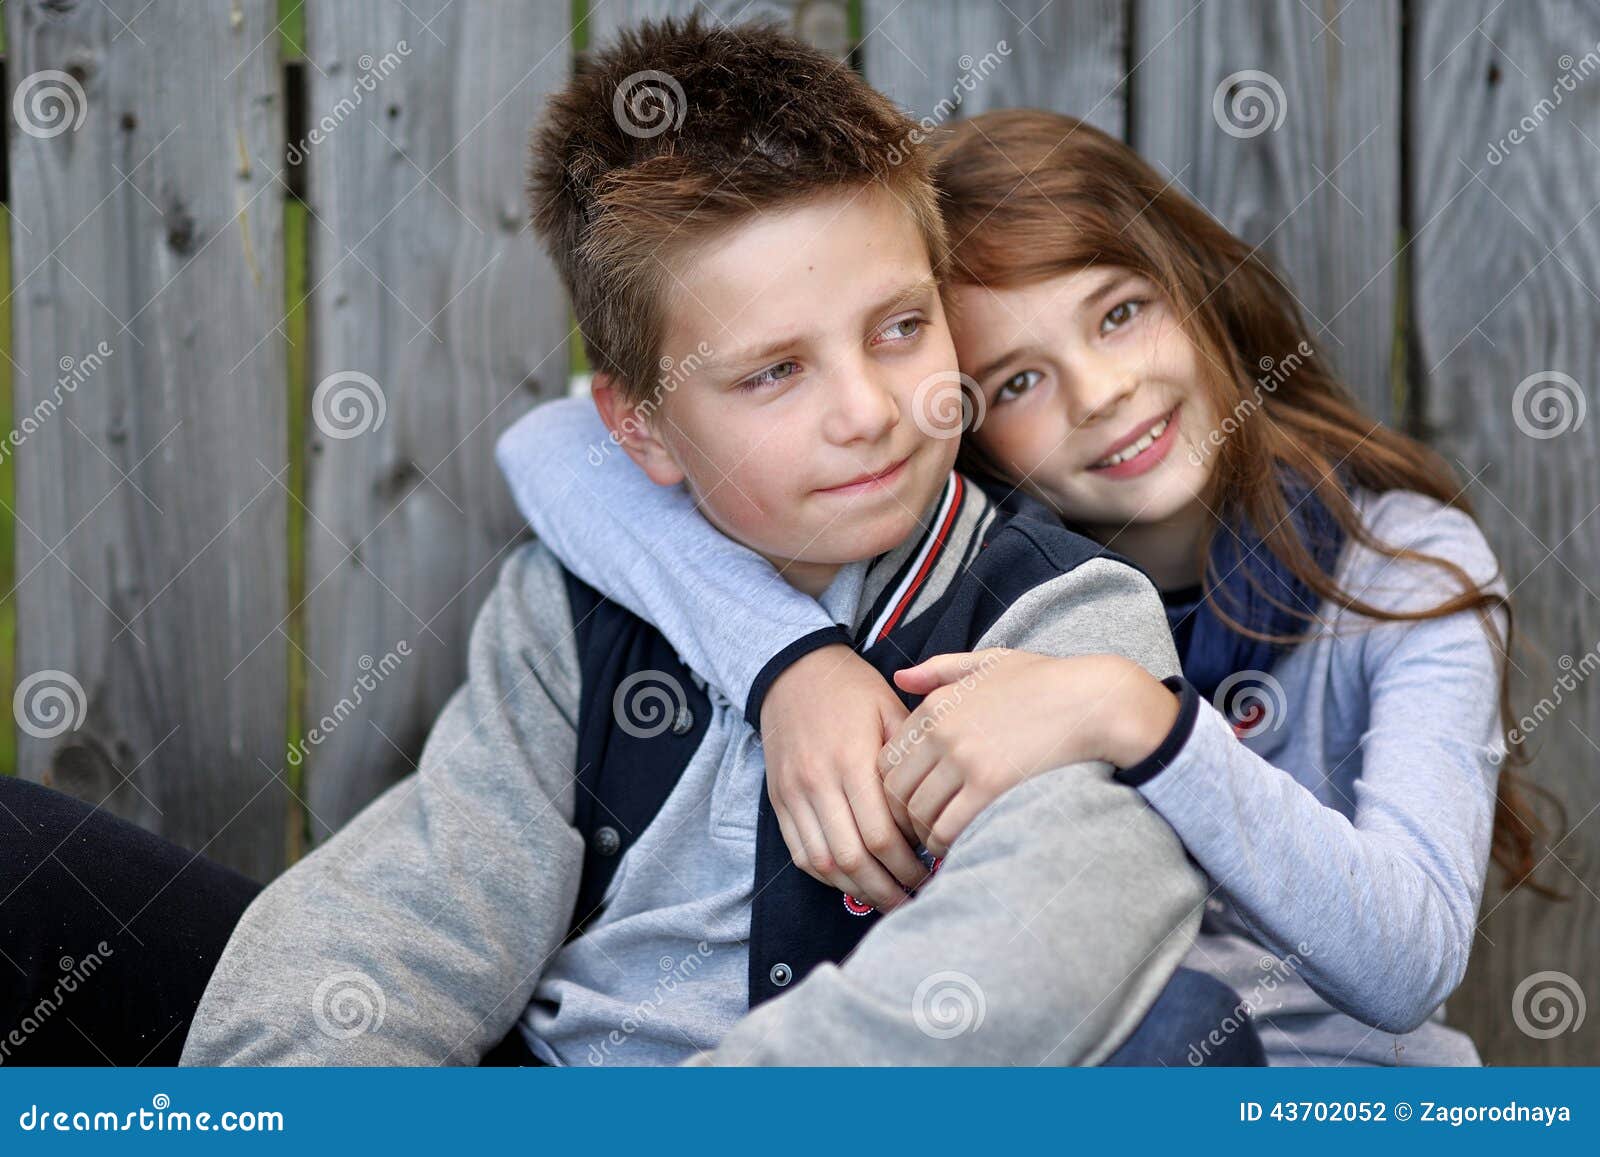 Boy girl shows. Фото мальчика с девочкой которые любят друг друга 12 лет. Спасёные девочки мальчиком фёдором фото. Одно фото с наручными часами мальчик и девочка.